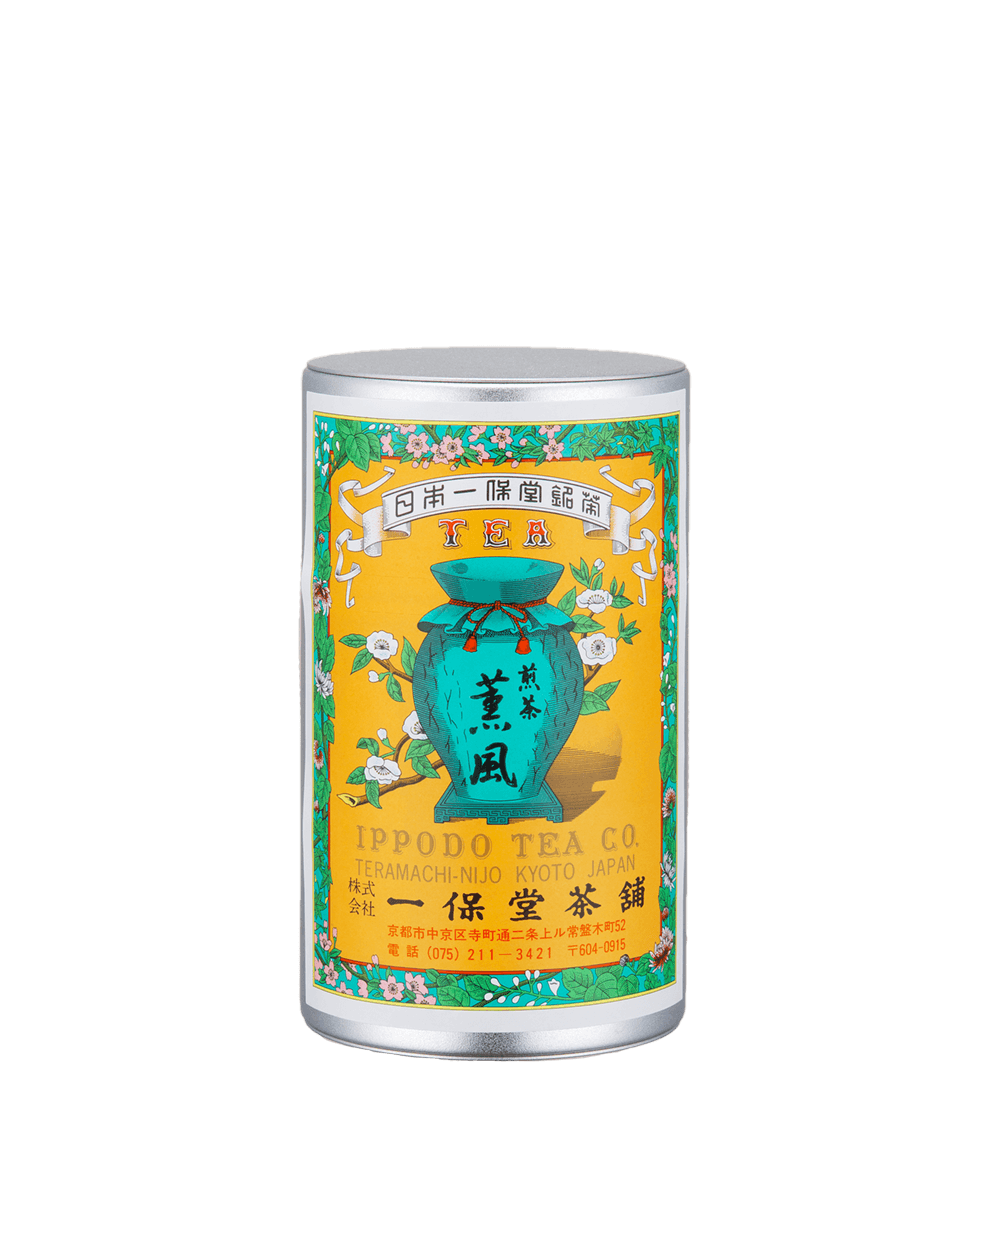 煎茶 薫風(くんぷう)中缶箱(150g) – 一保堂茶舗